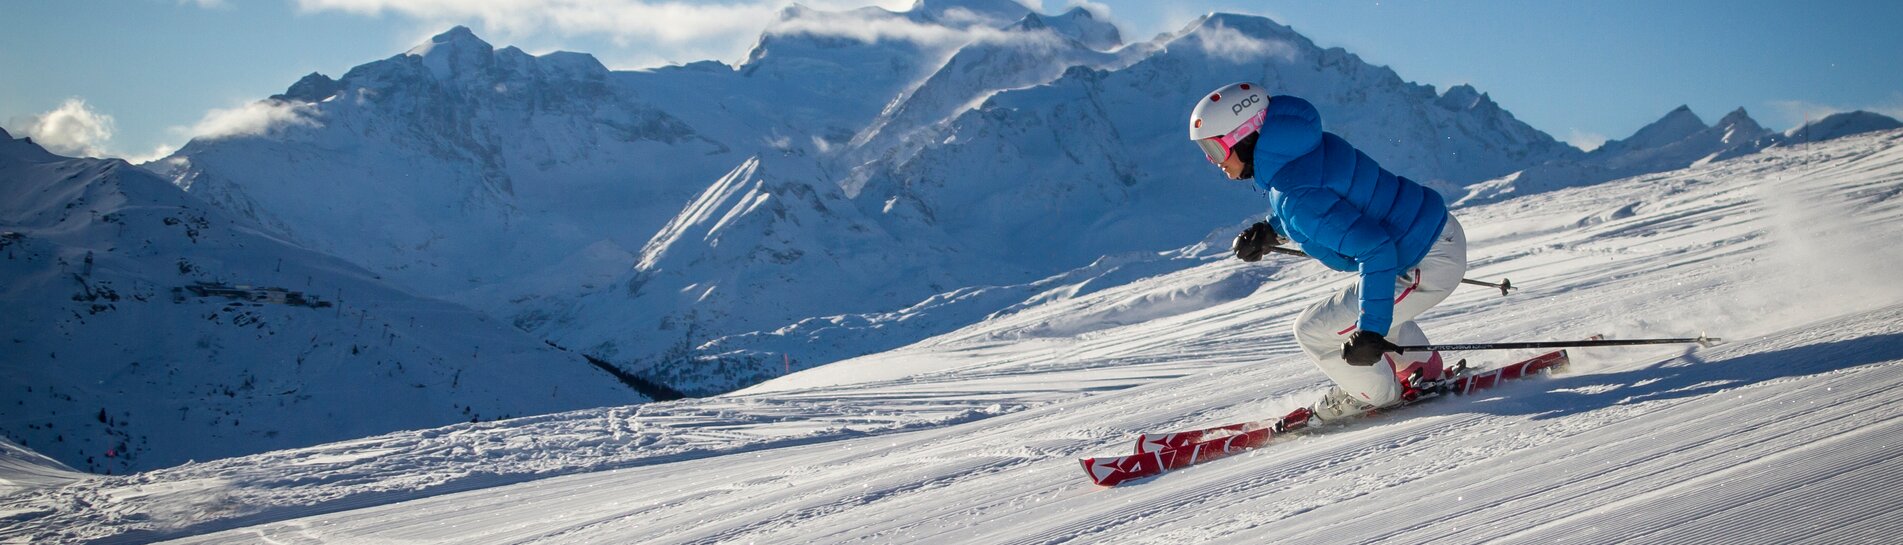 La Tzoumaz domaine skiable, Suisse